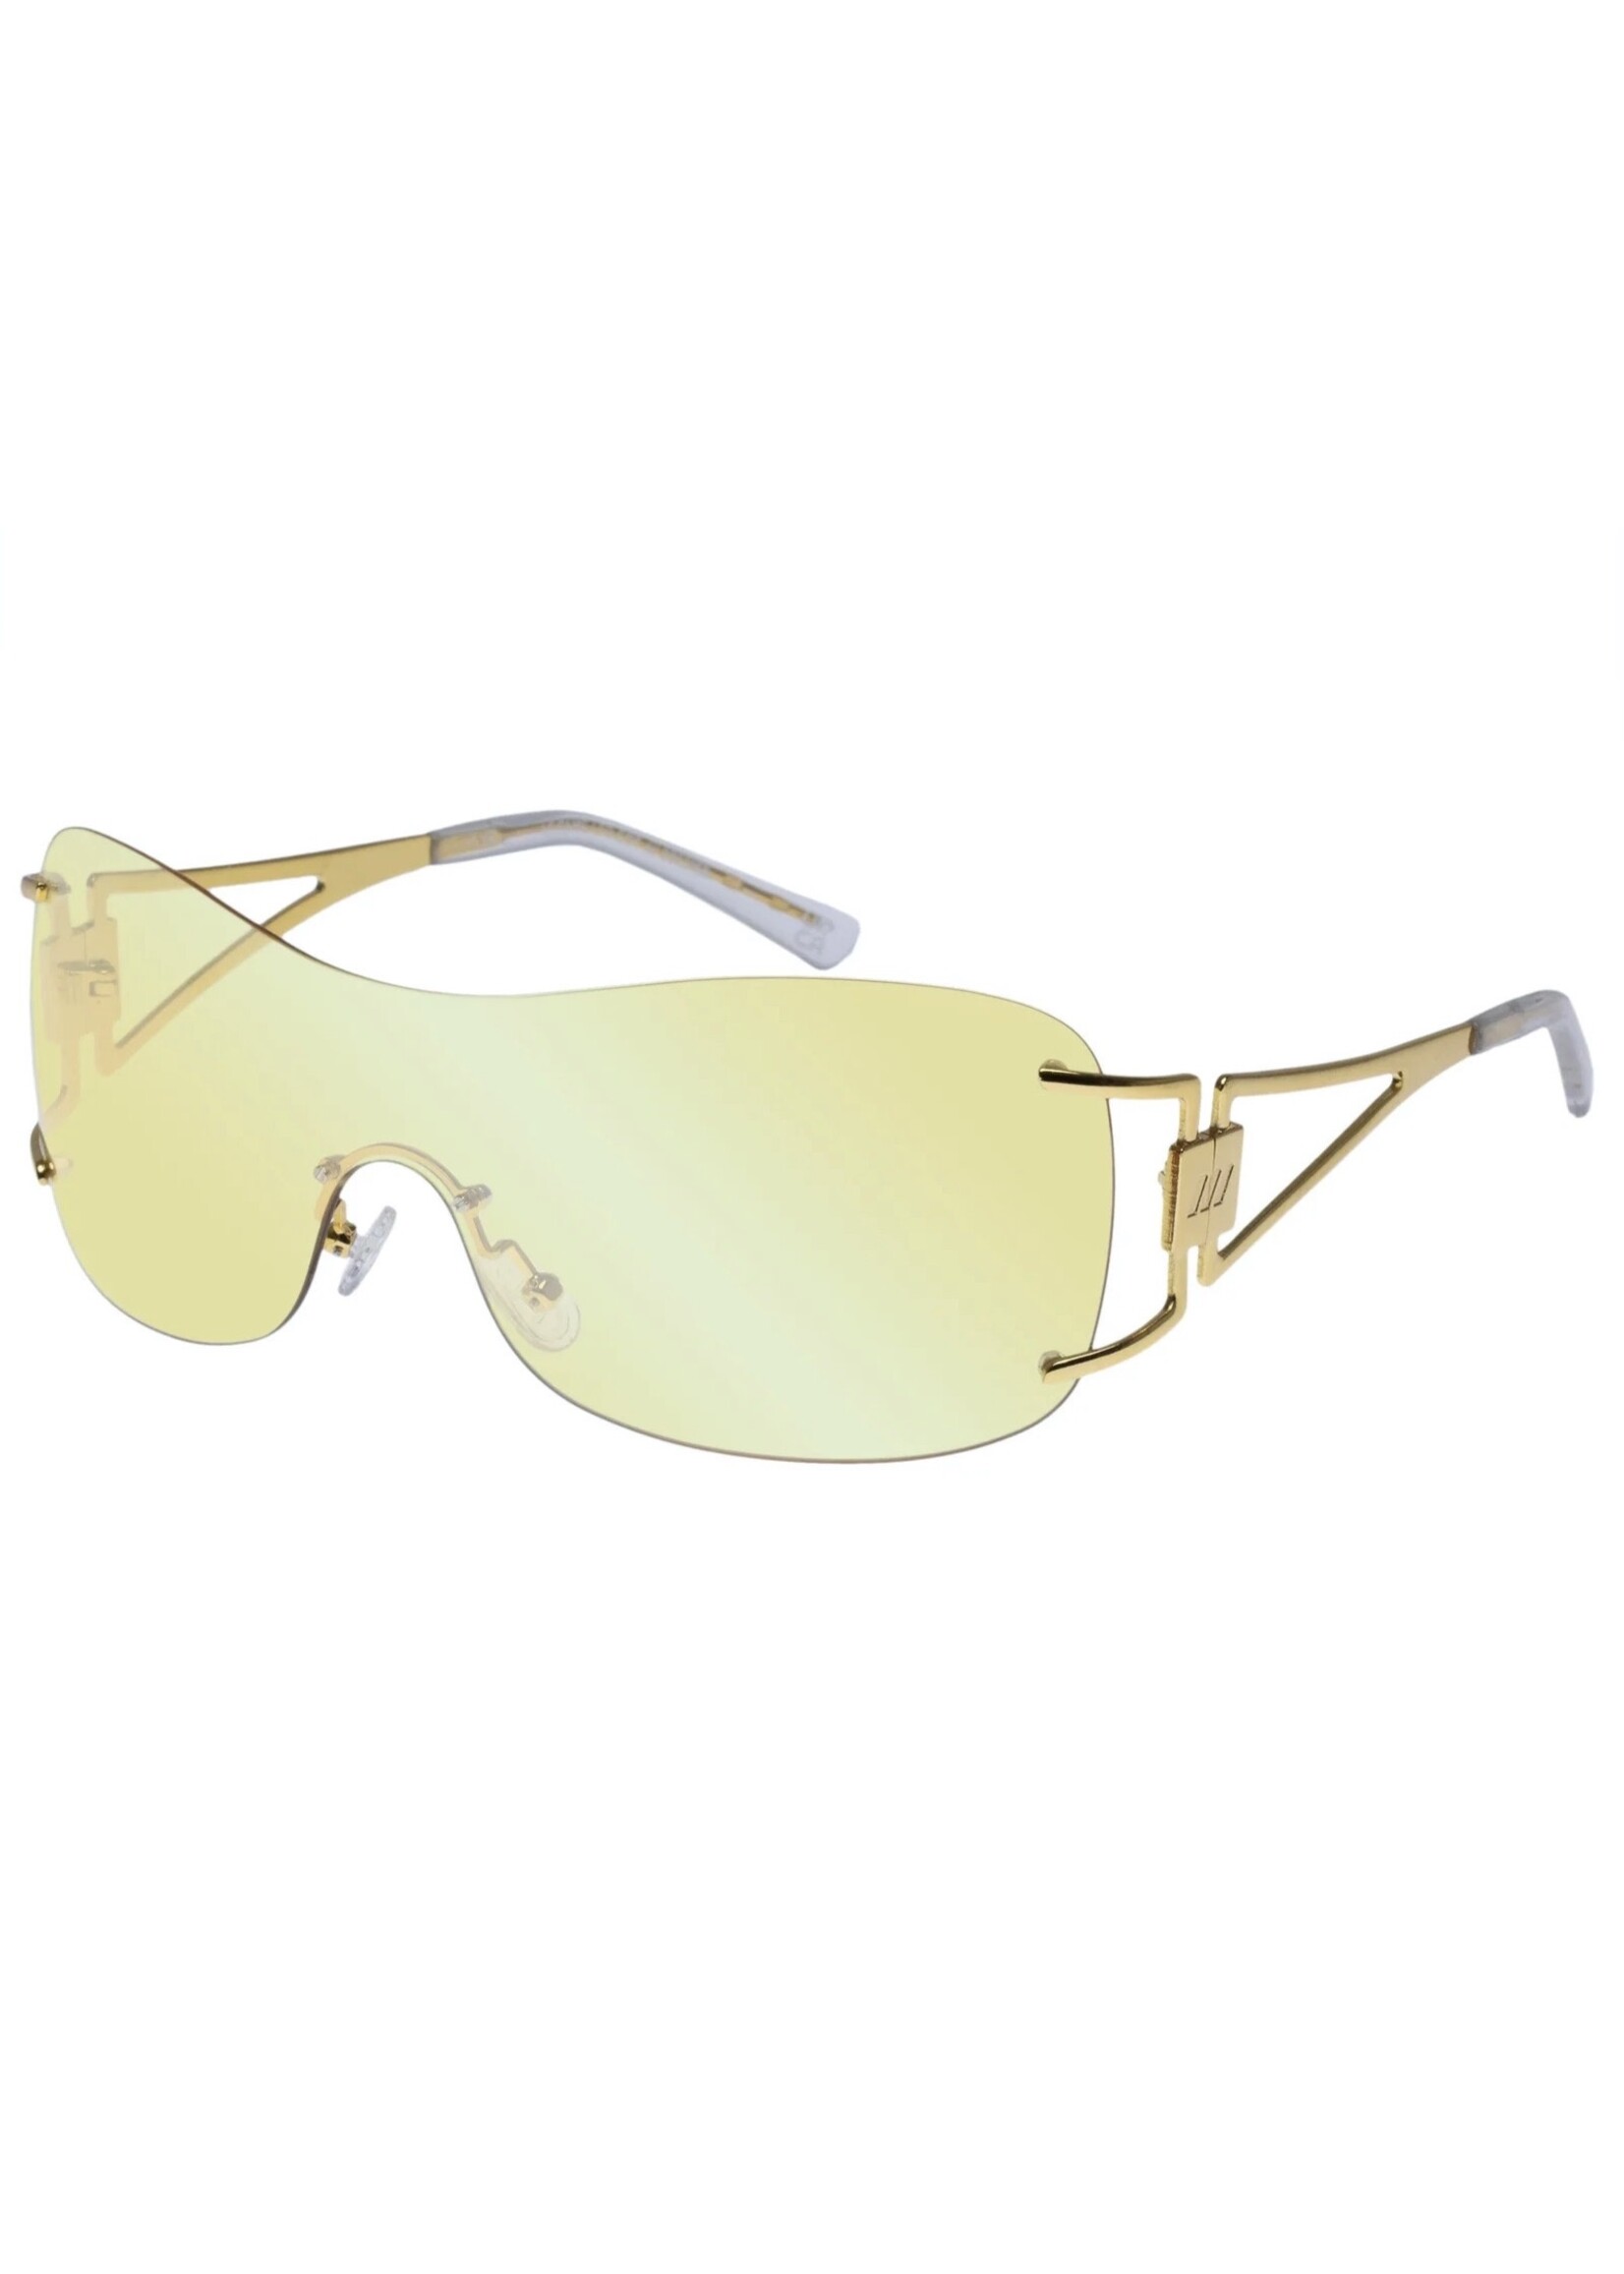 Le Specs Sunglasses "Le Fame" by LESPECS